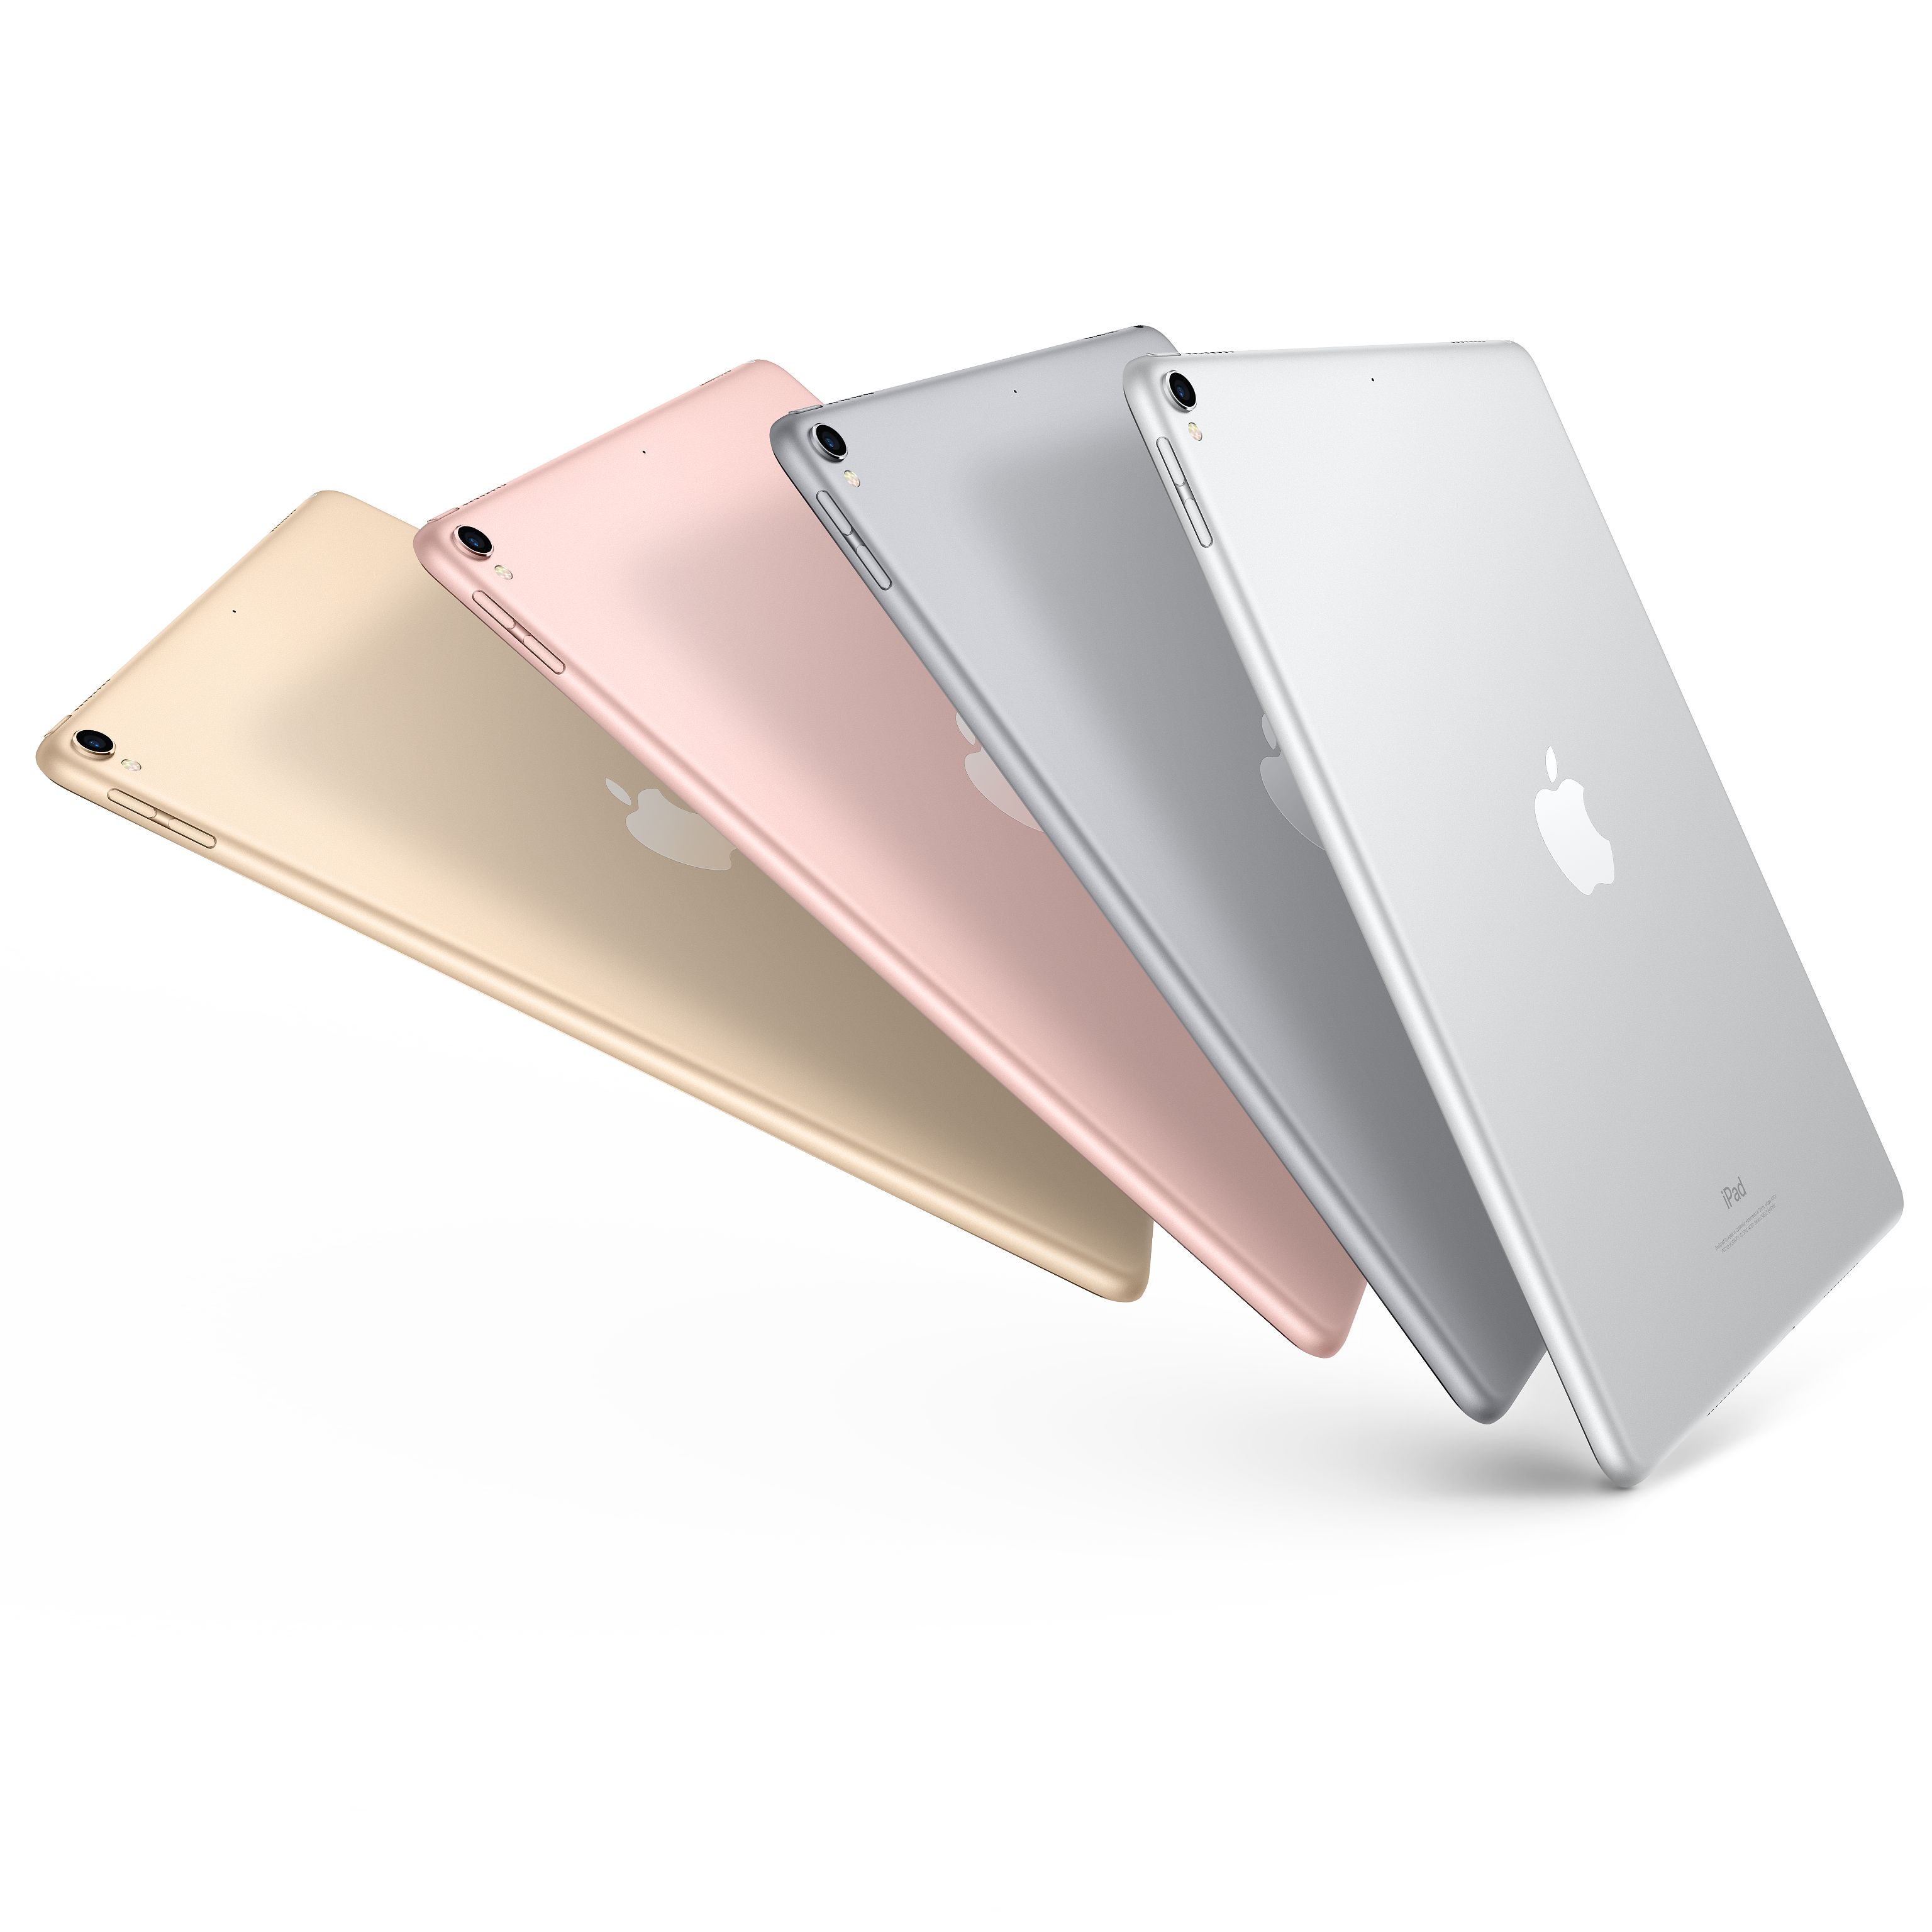 苹果(Apple) iPad pro 新款10.5英寸平板电脑 金色256GB WLAN版 MPF12CH/A